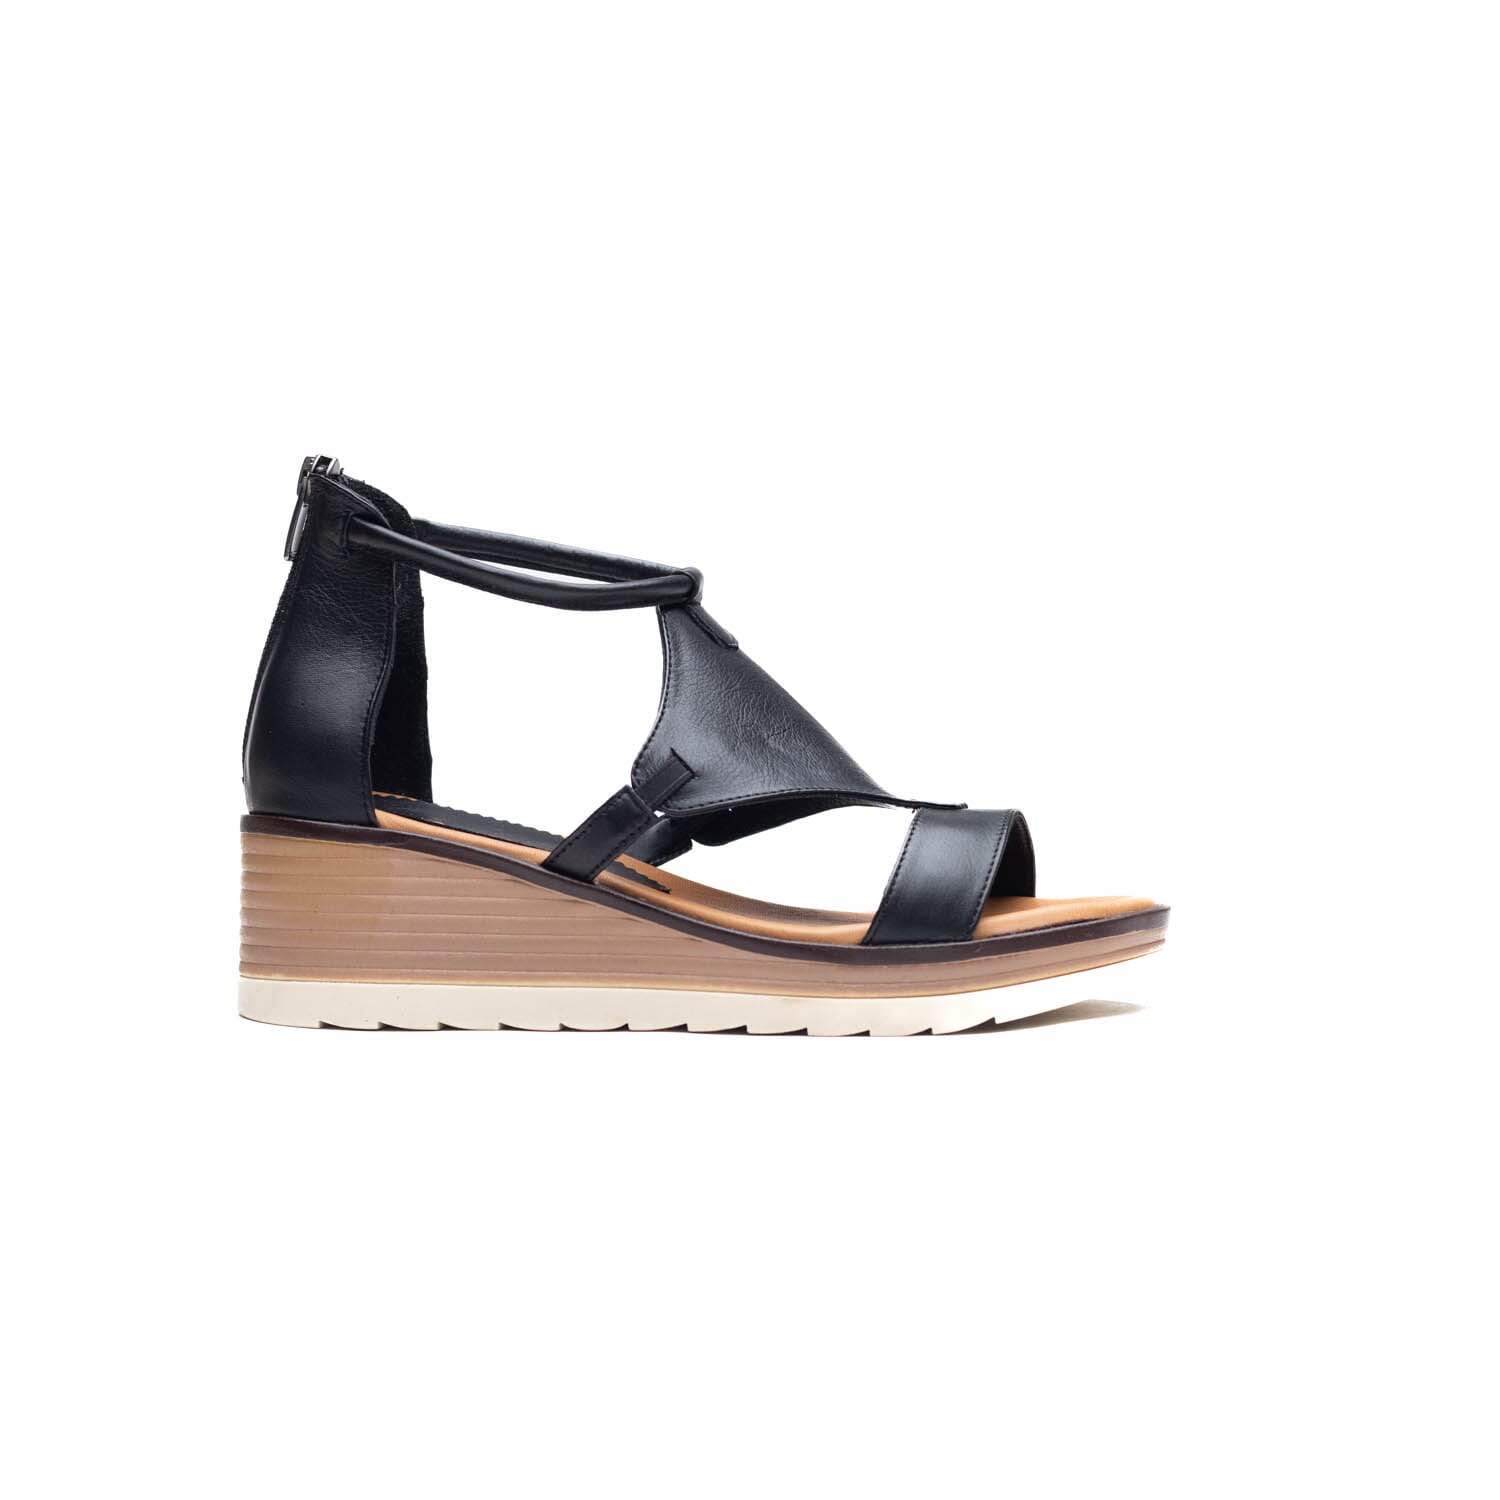 Sofia Mare – 11276 – Black – Perocili Shoes